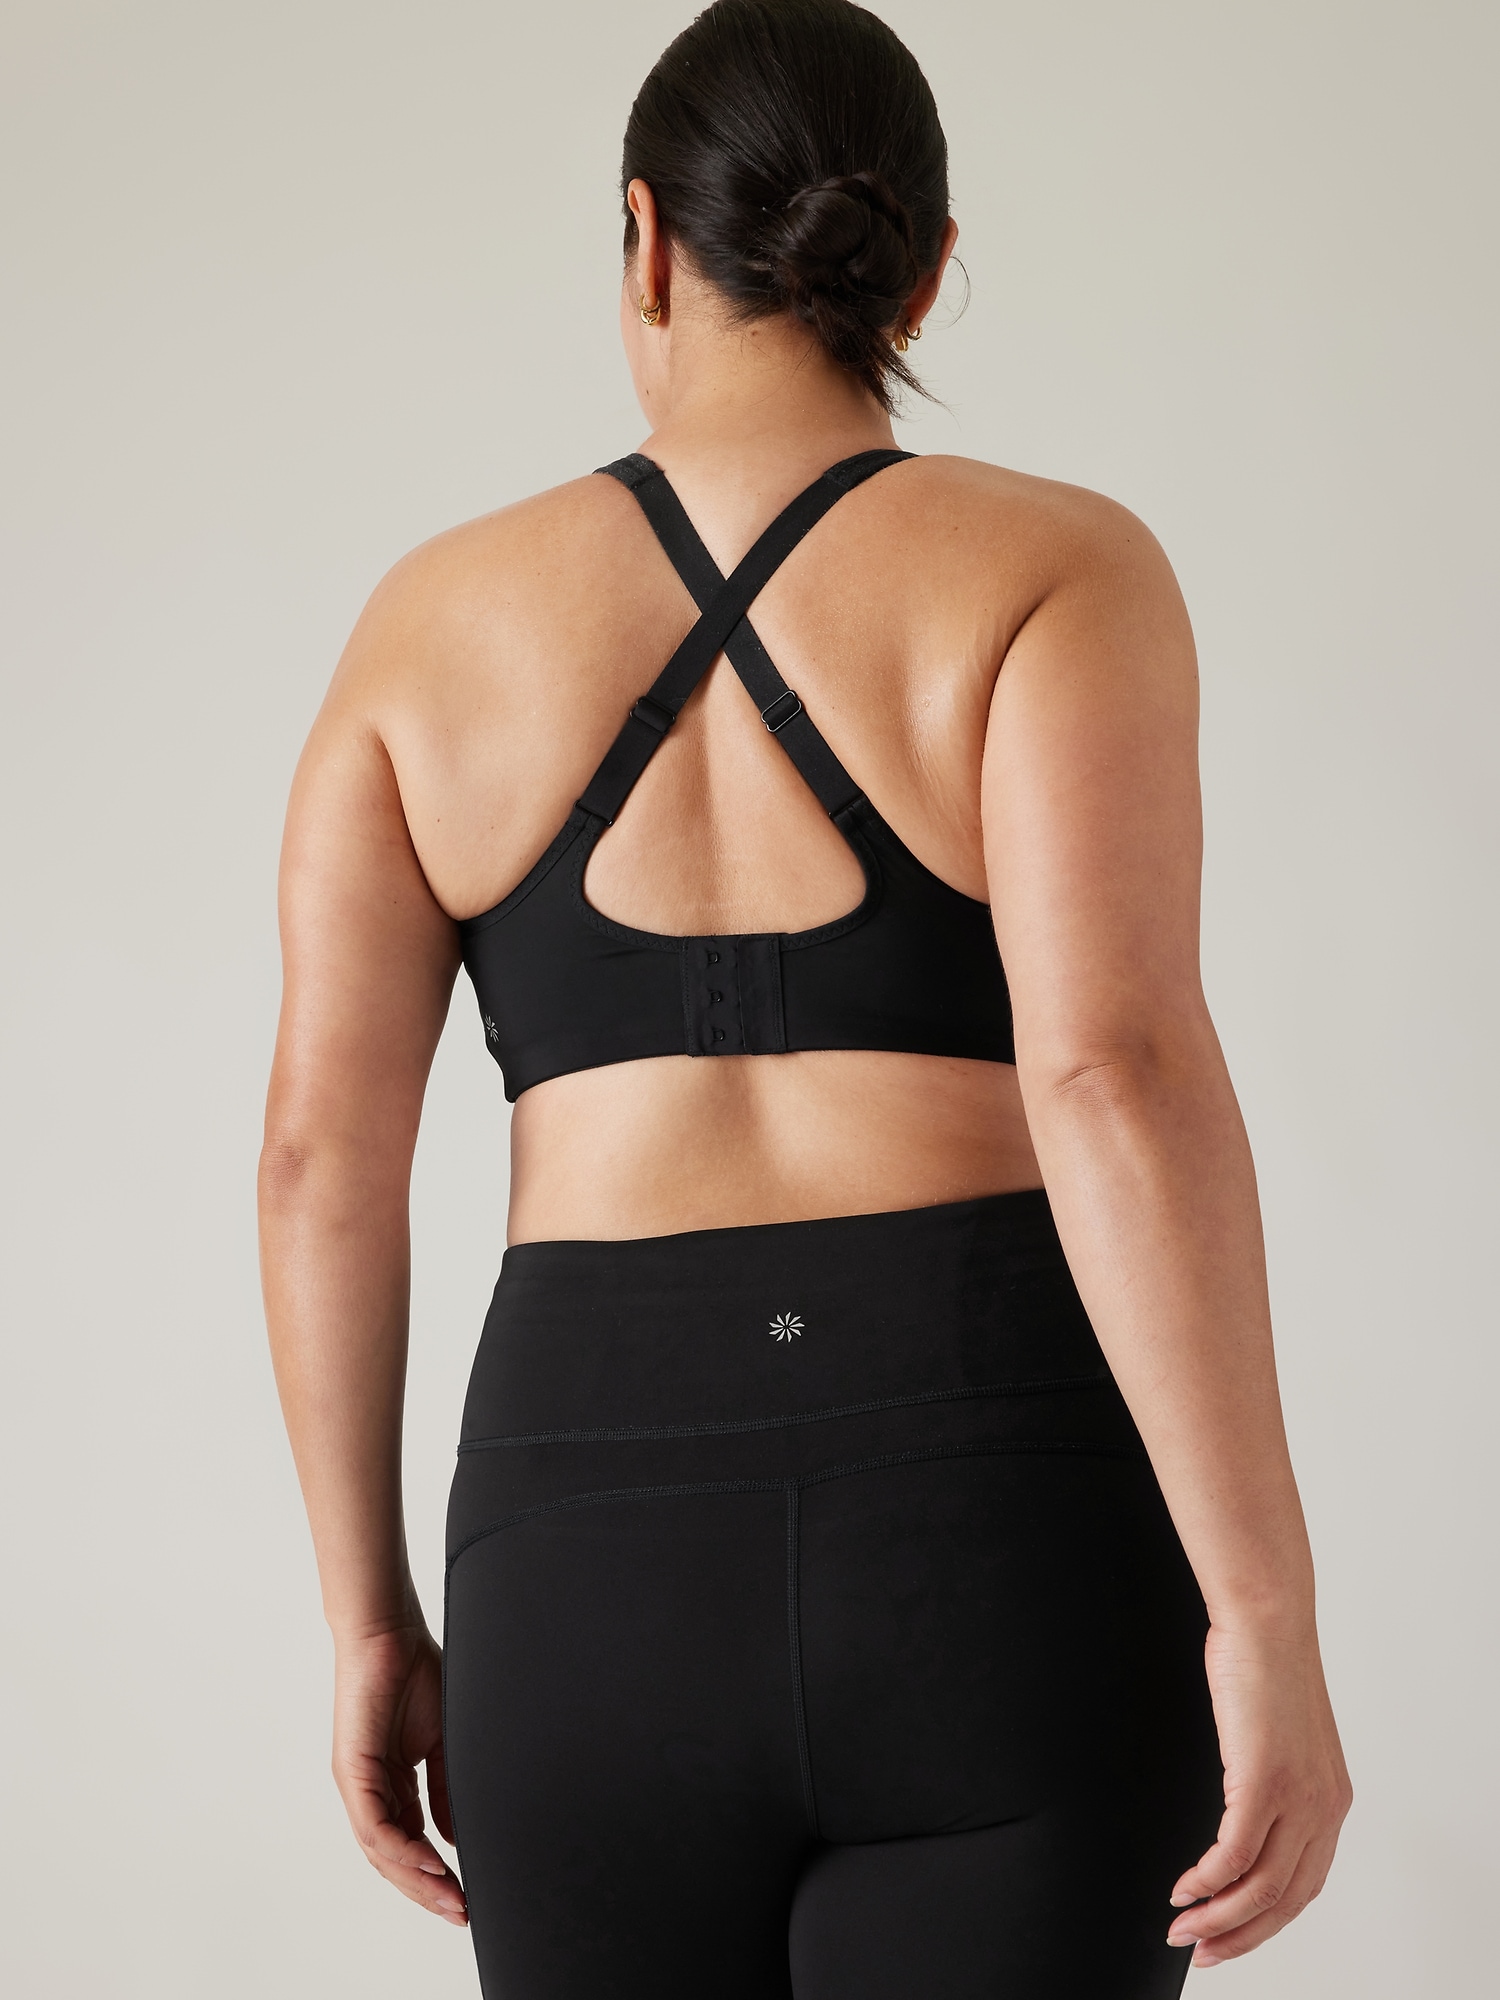 Clothing - Authentic Balance Yoga Medium-Support Bra (Plus Size